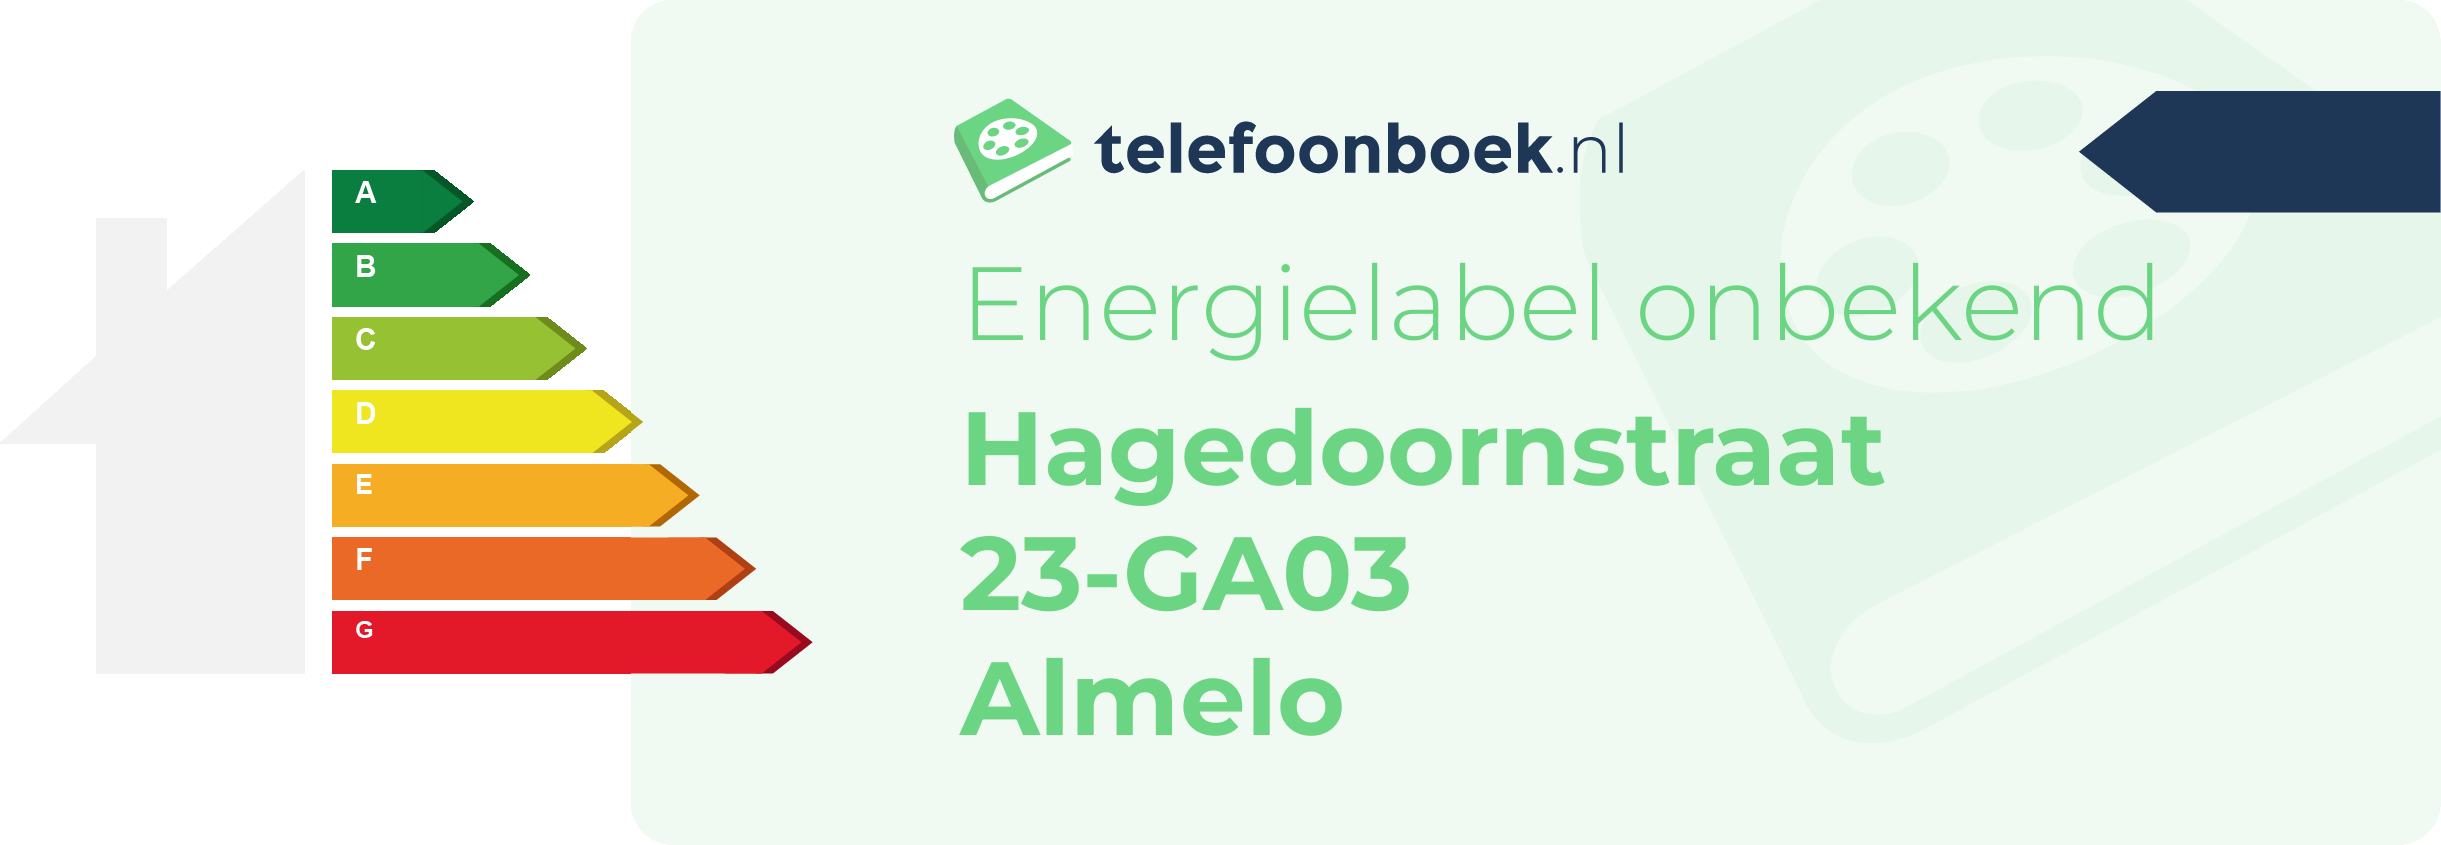 Energielabel Hagedoornstraat 23-GA03 Almelo